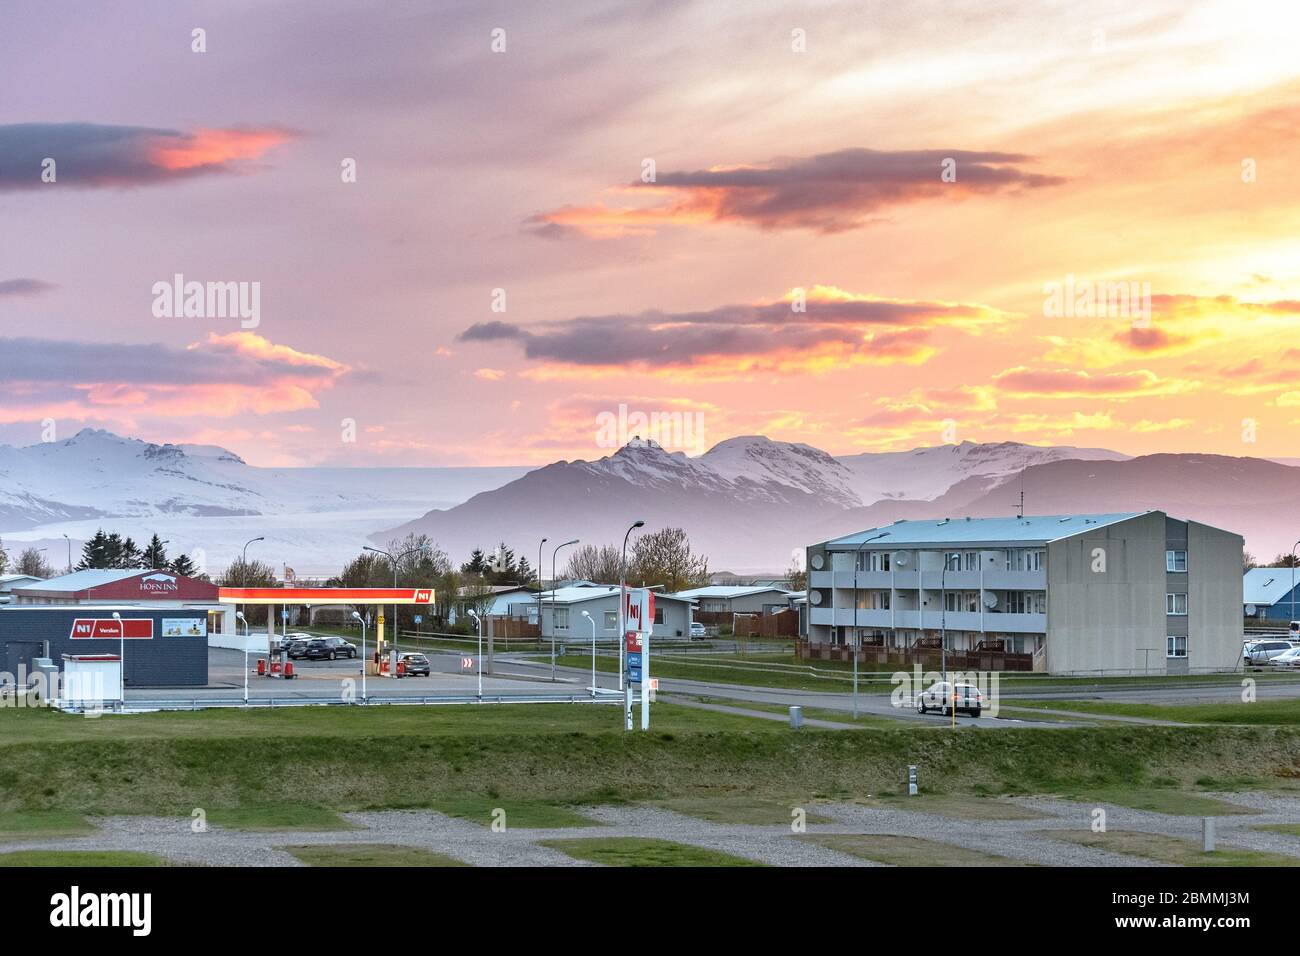 Eine N1 Tankstelle in Hofn, Island bei Sonnenuntergang mit einem dramatischen Himmel Stockfoto